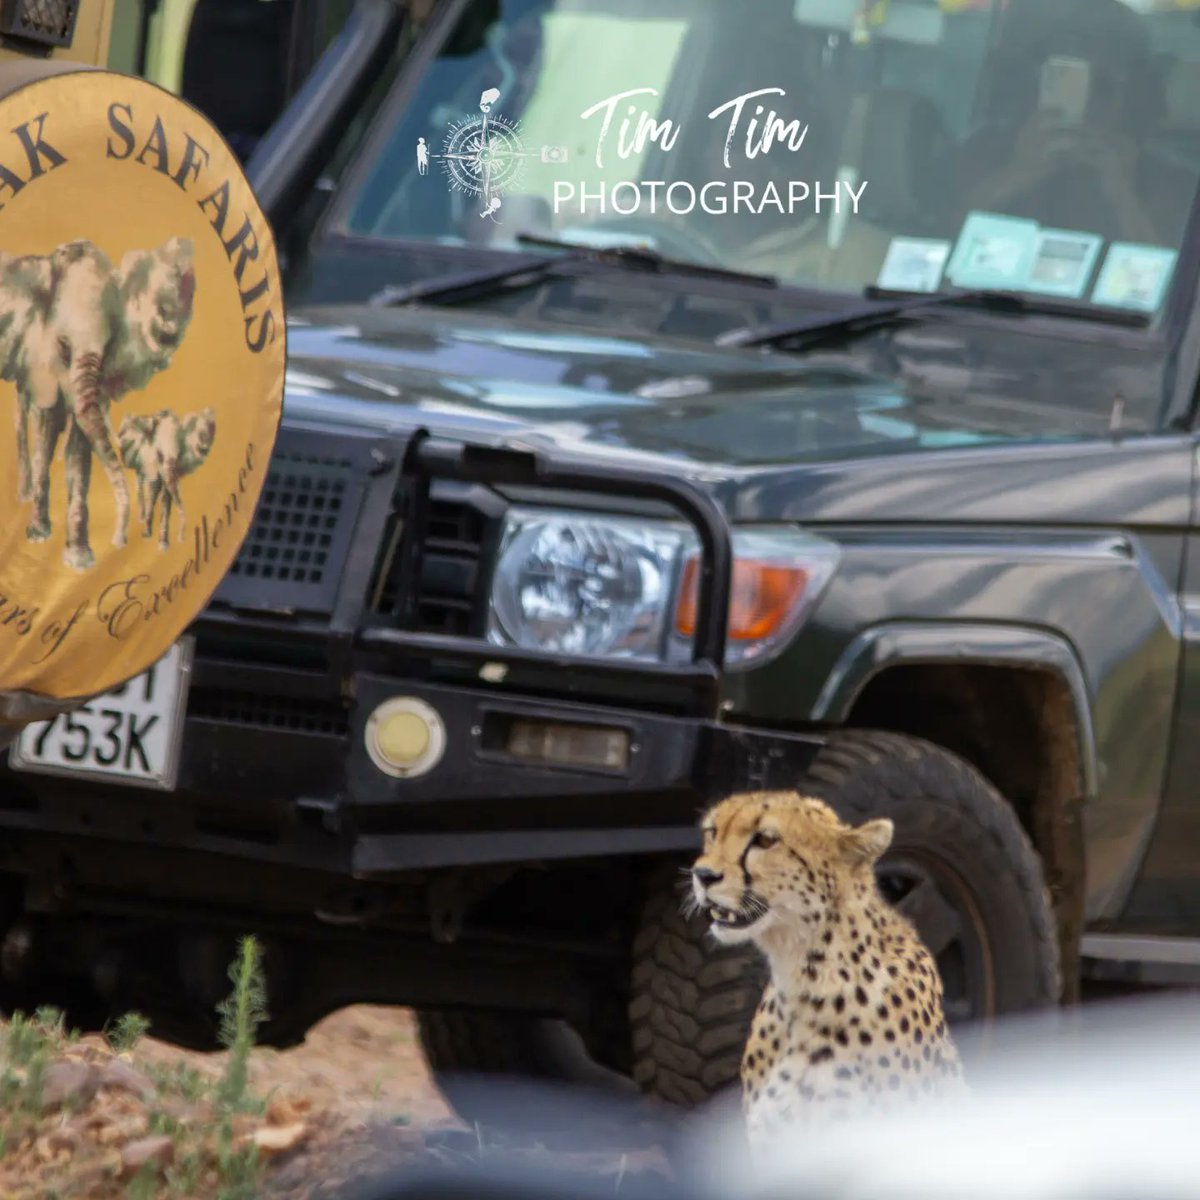 Must have been Cheetah week.
#tembeakenya
#themillennialguide 
#natgeomyshot 
#travelphotography 
#natgeoafrica 
#natgeoyourshot